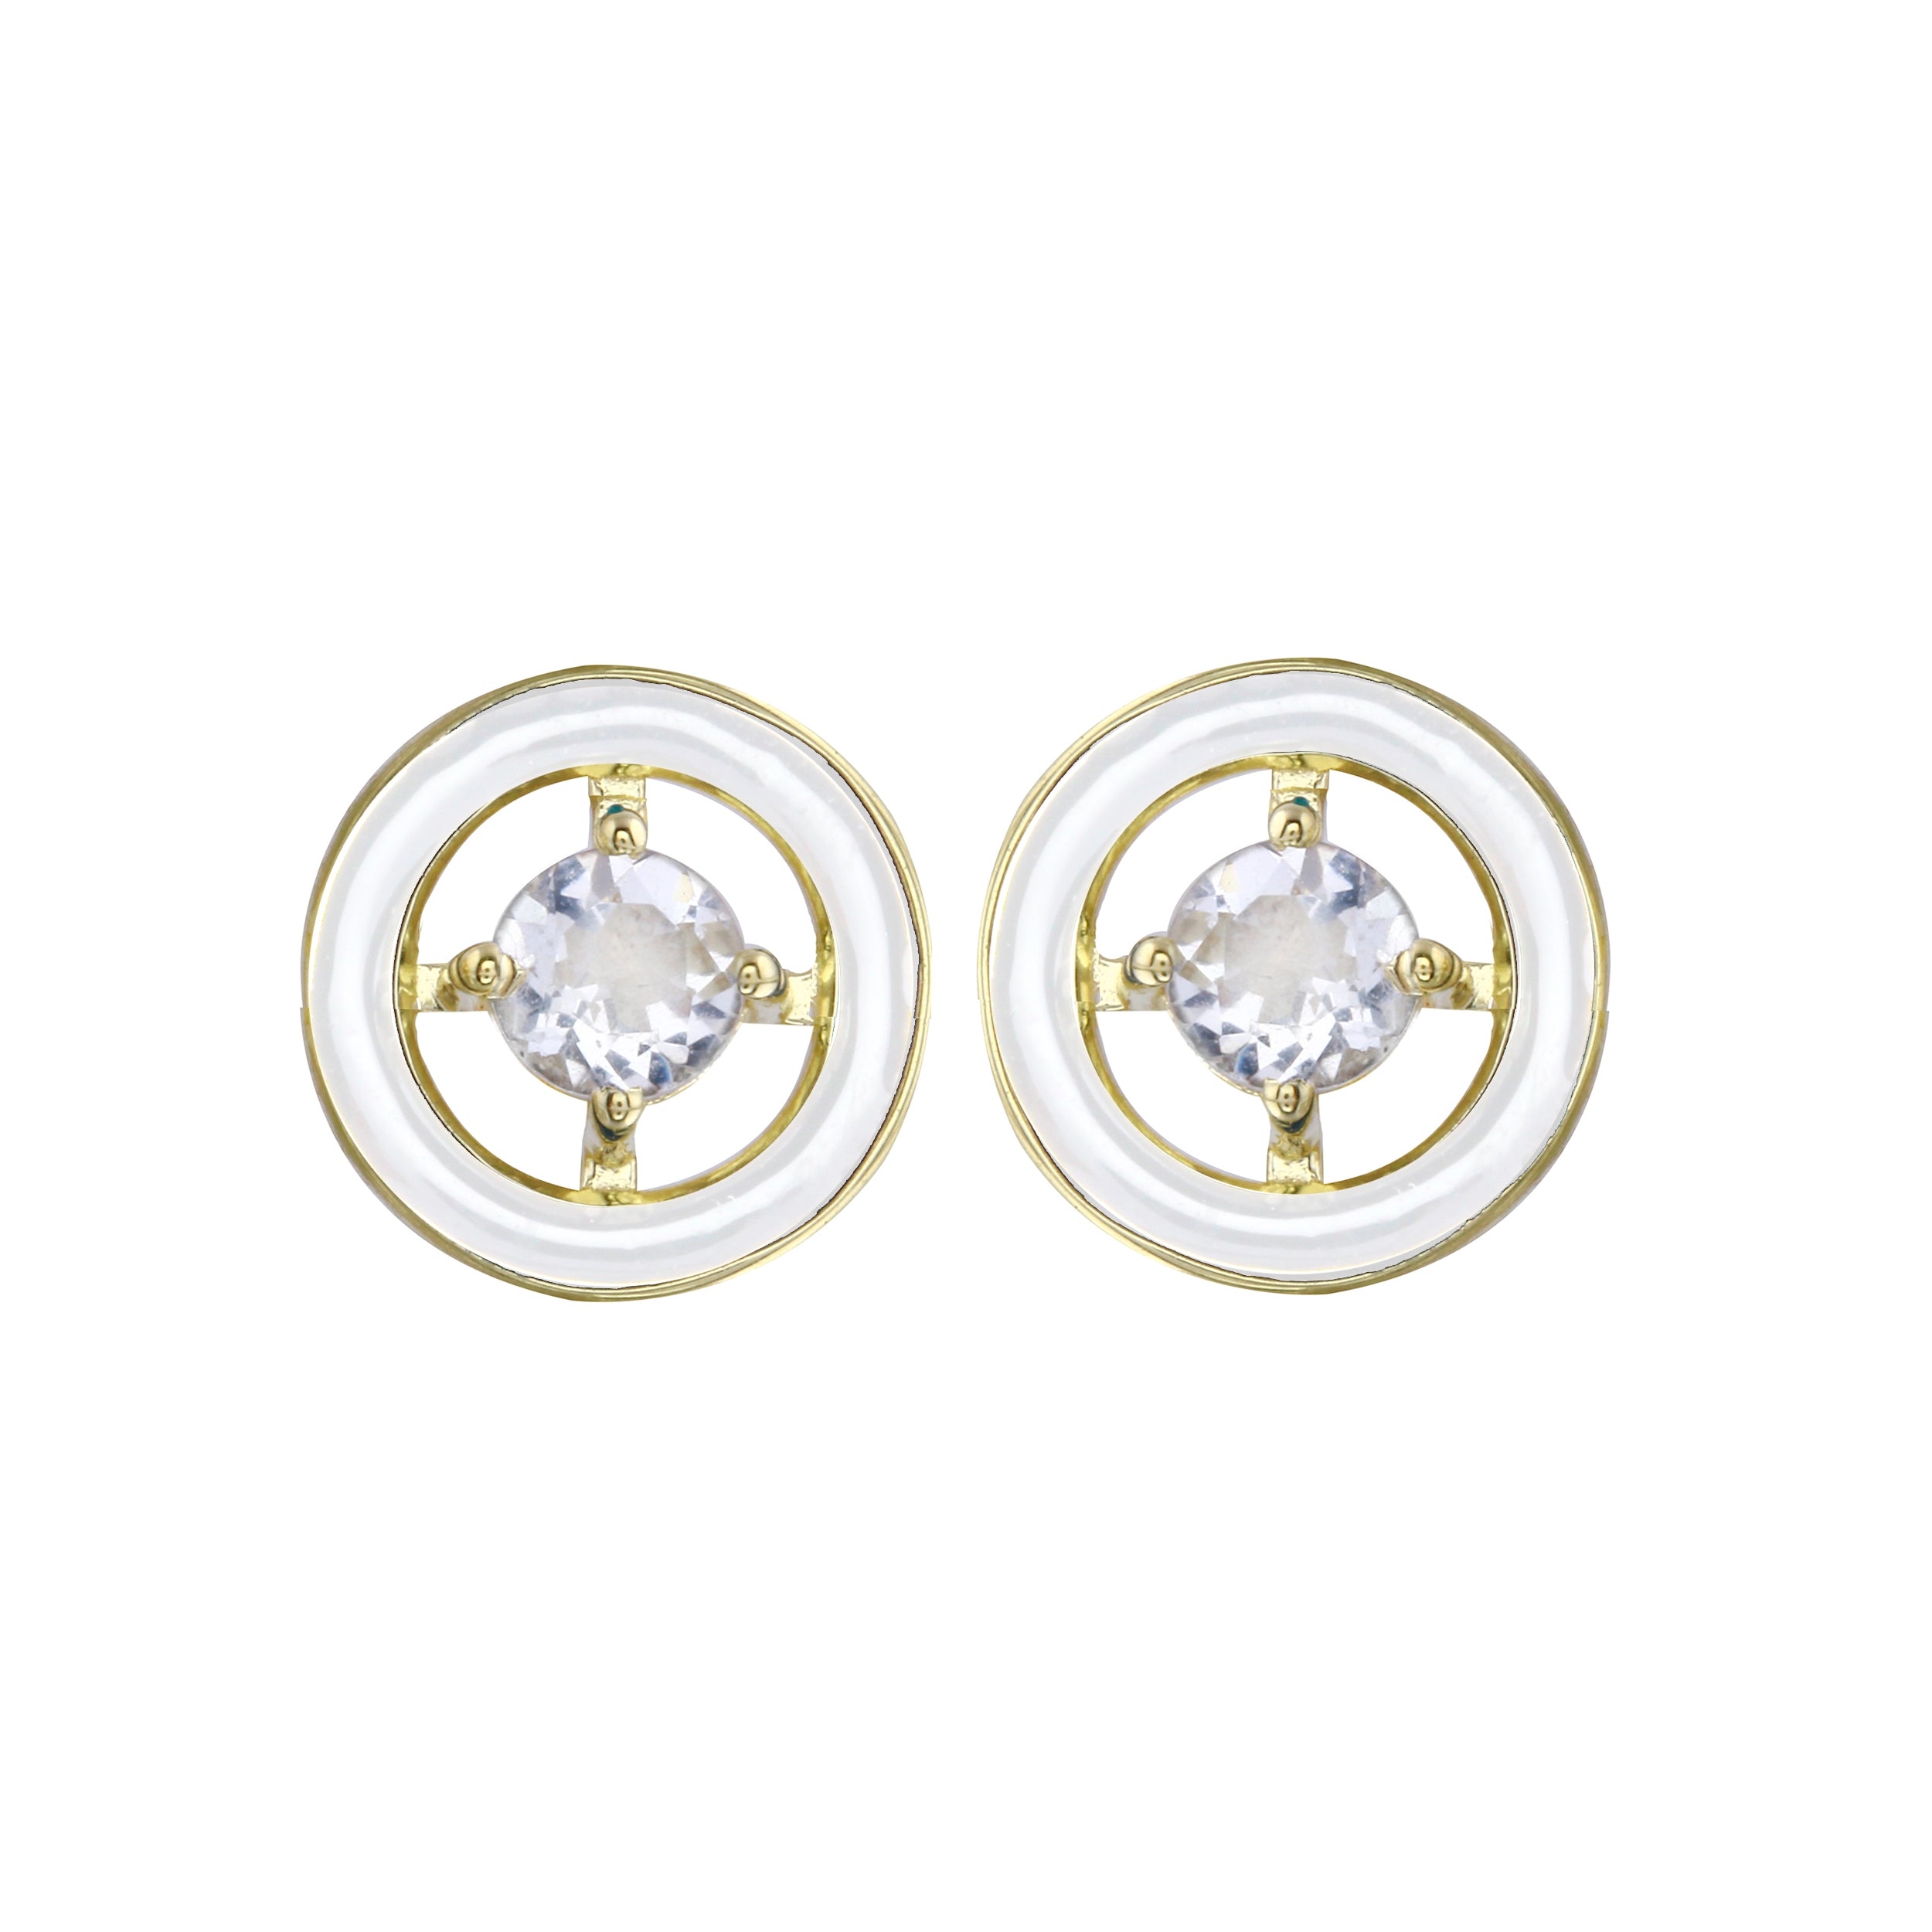 White Zircon and Enamel Circle Stud Earrings-Earrings-Ashley Schenkein Jewelry Design